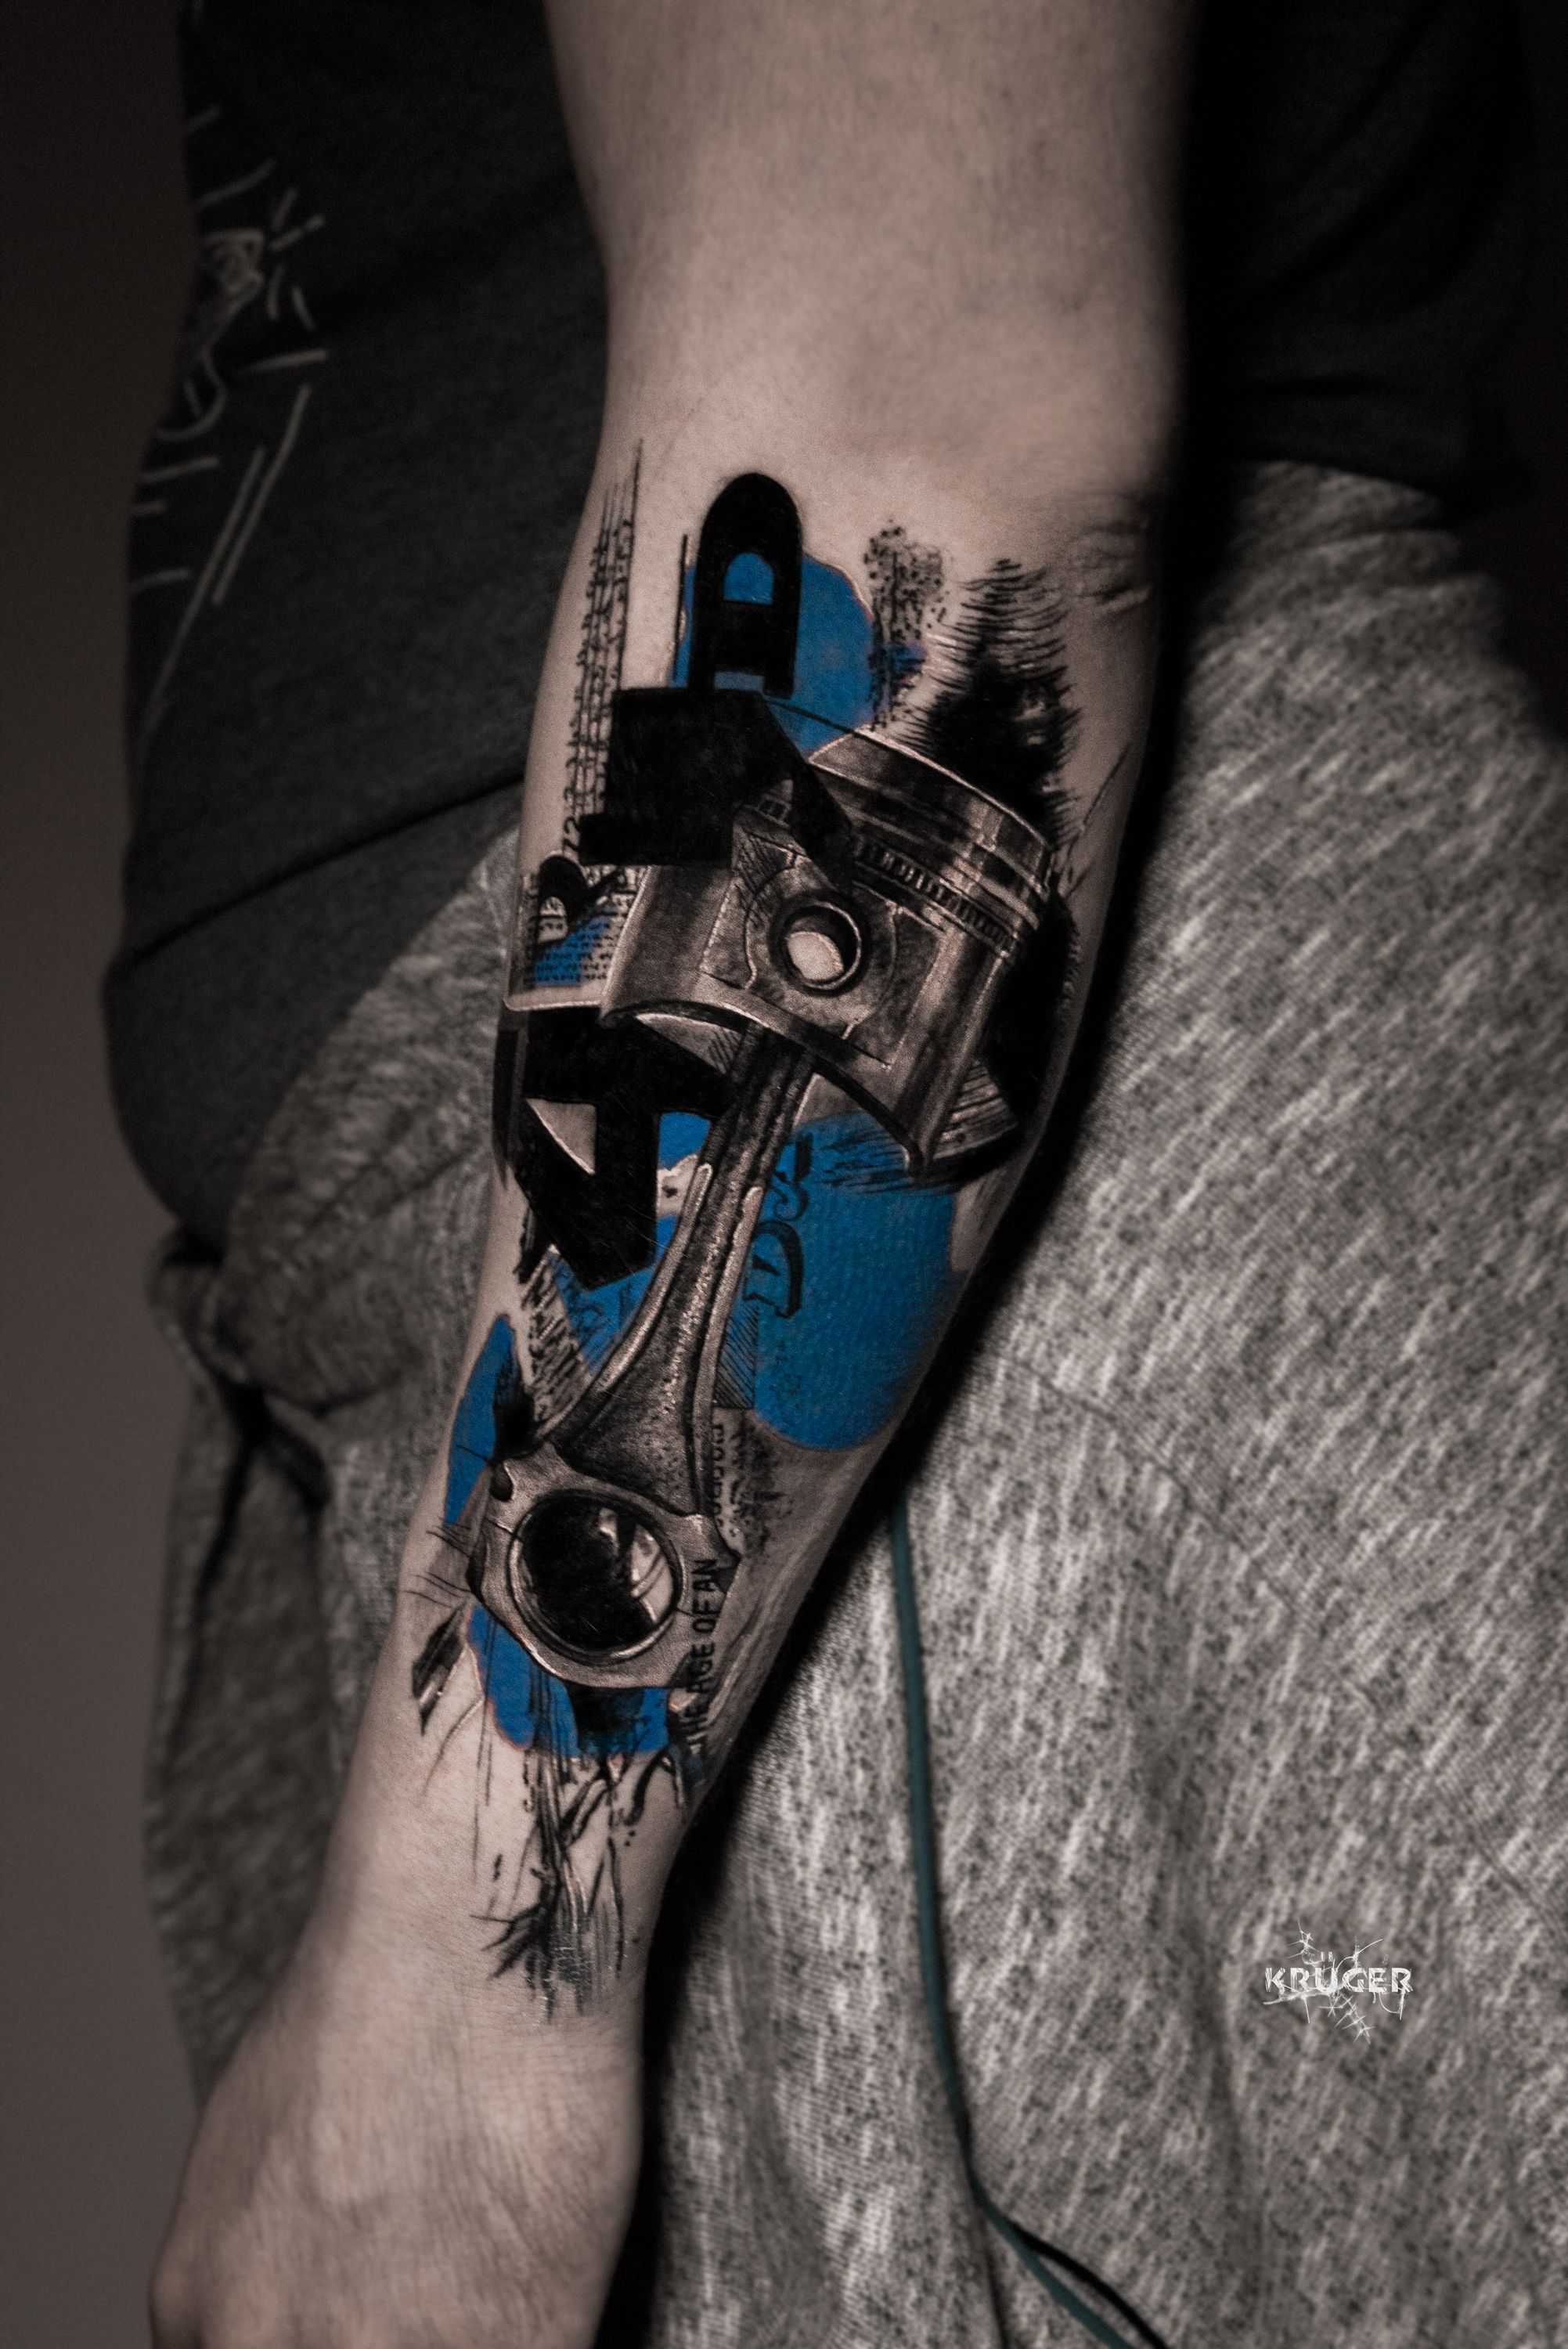 TURBO 🔥 @da_chefff • • • • • • • • • #tattoo #tattooideas #tattoos  #tattooart #tattooartist #tattooed #inked #inked... | Instagram